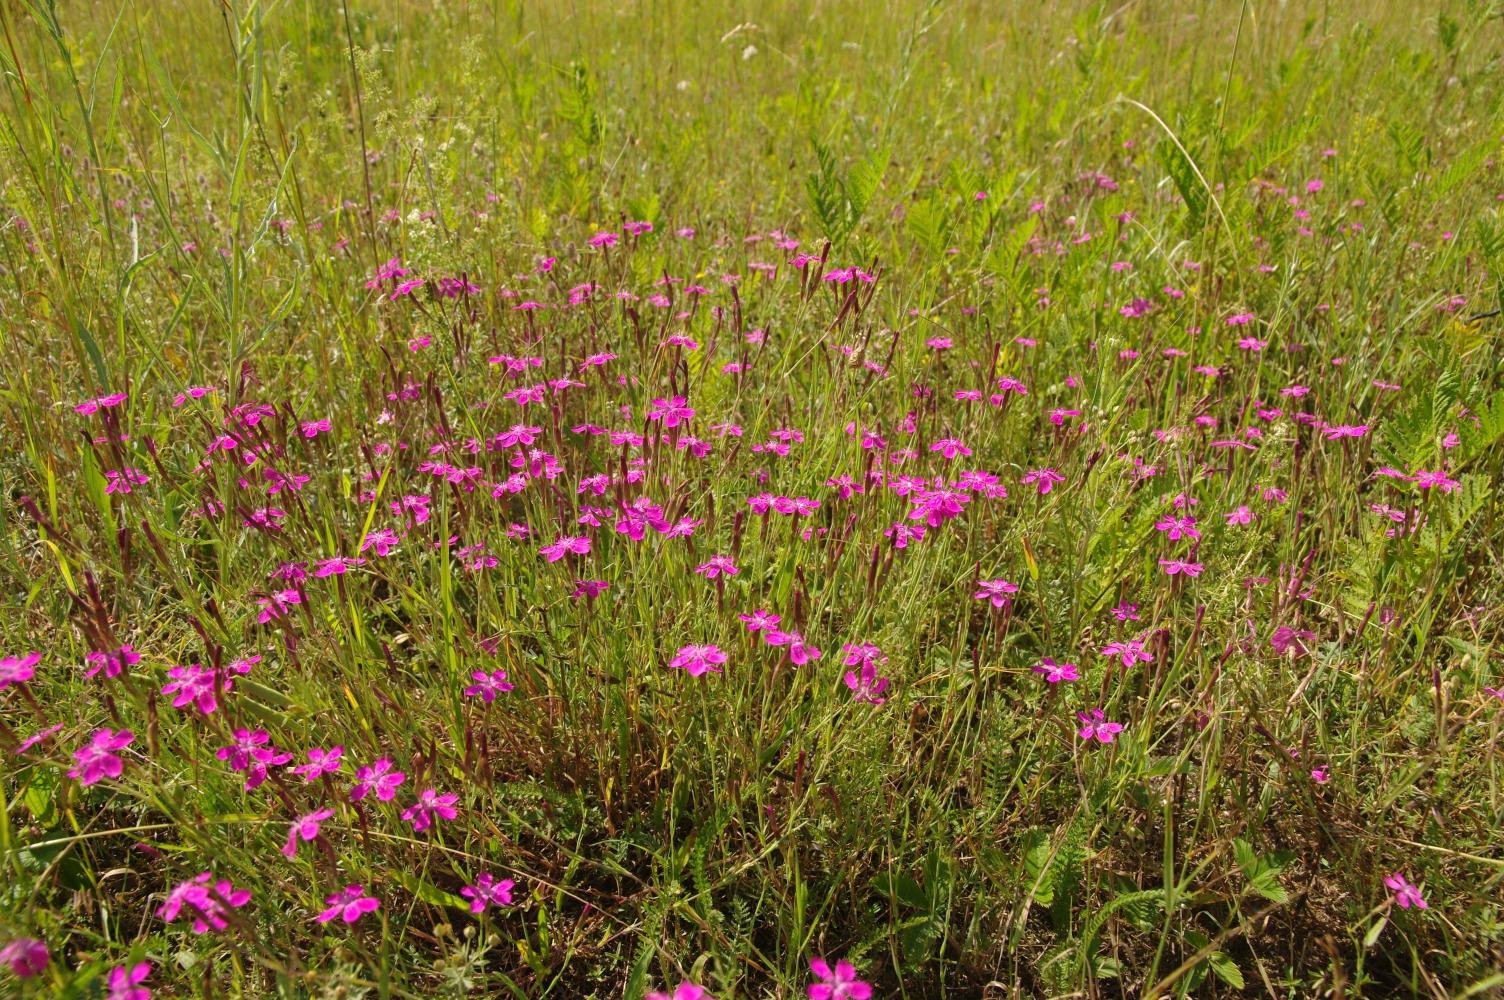 Na fotografii vidíme desítky purpurových květu hvozdíku v travním porostu.